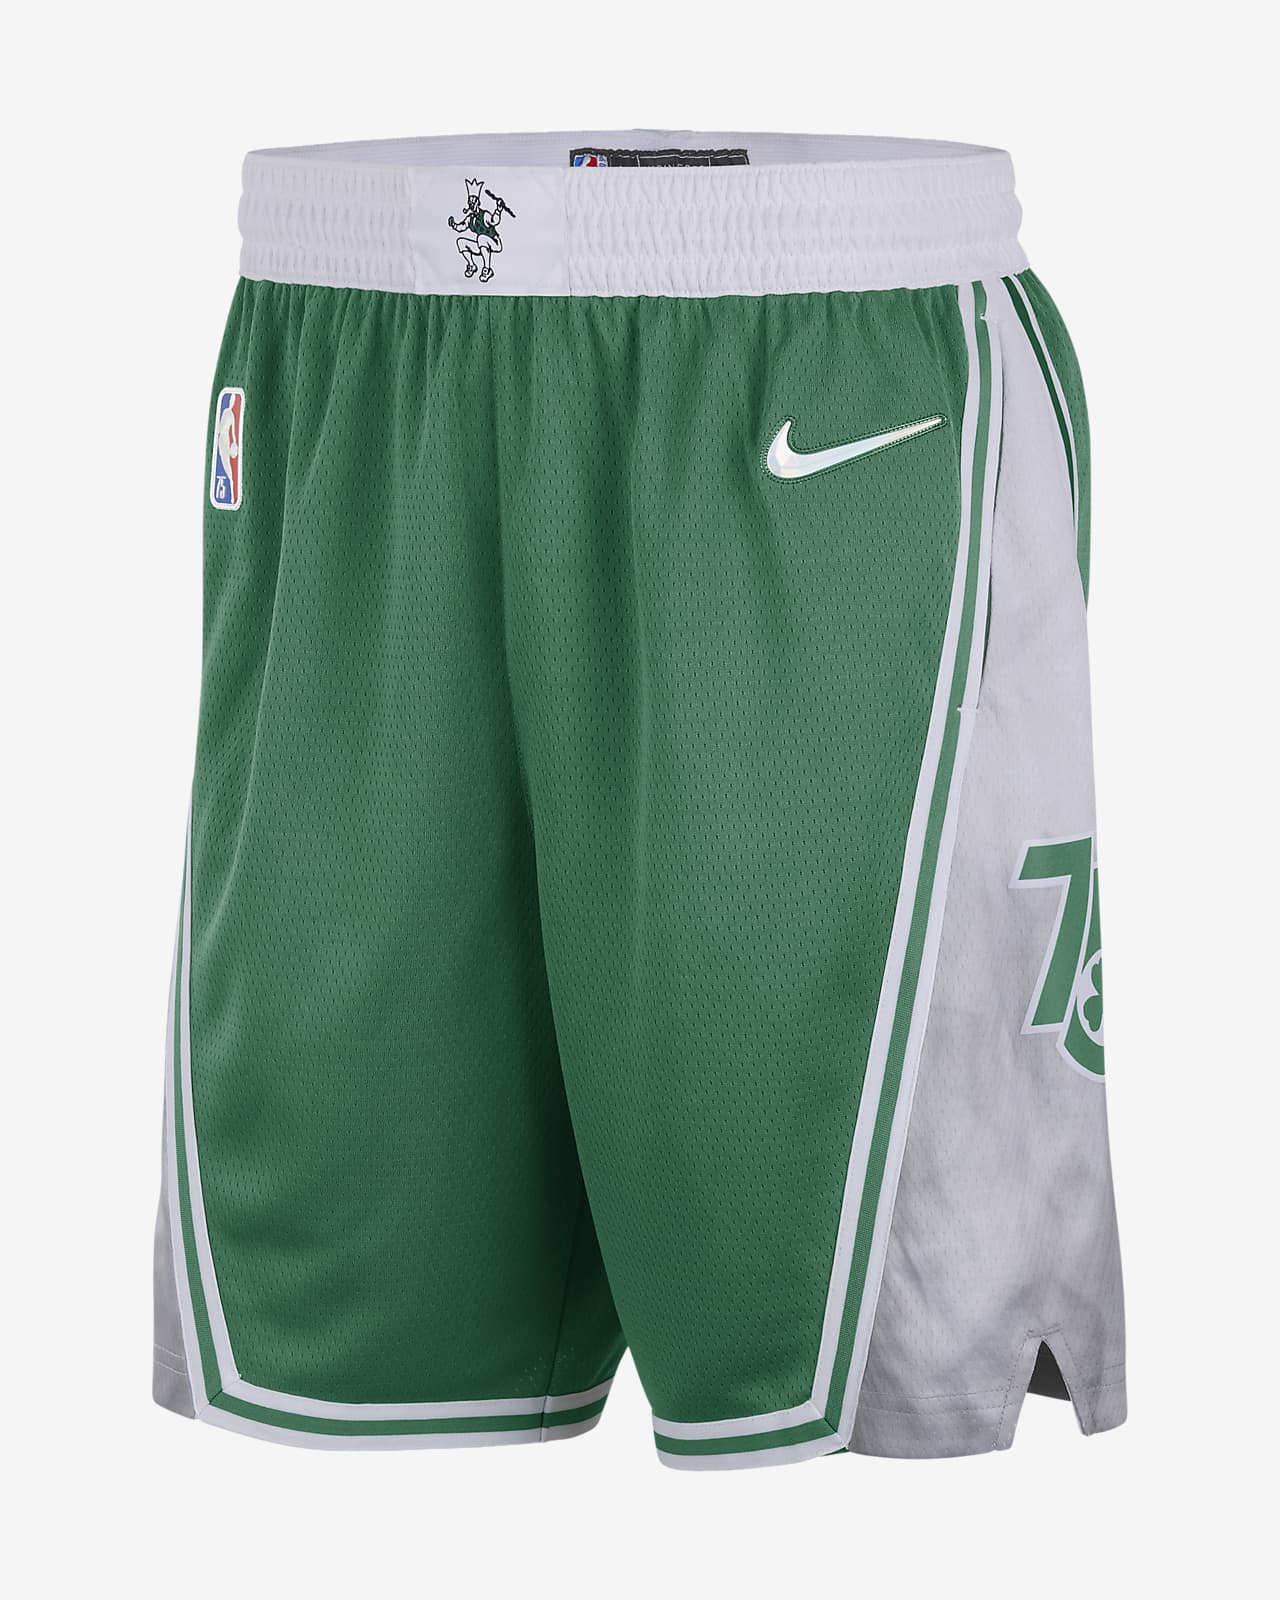 Boston Celtics City Edition Pantalón corto Nike Dri-FIT Swingman de la NBA - Hombre